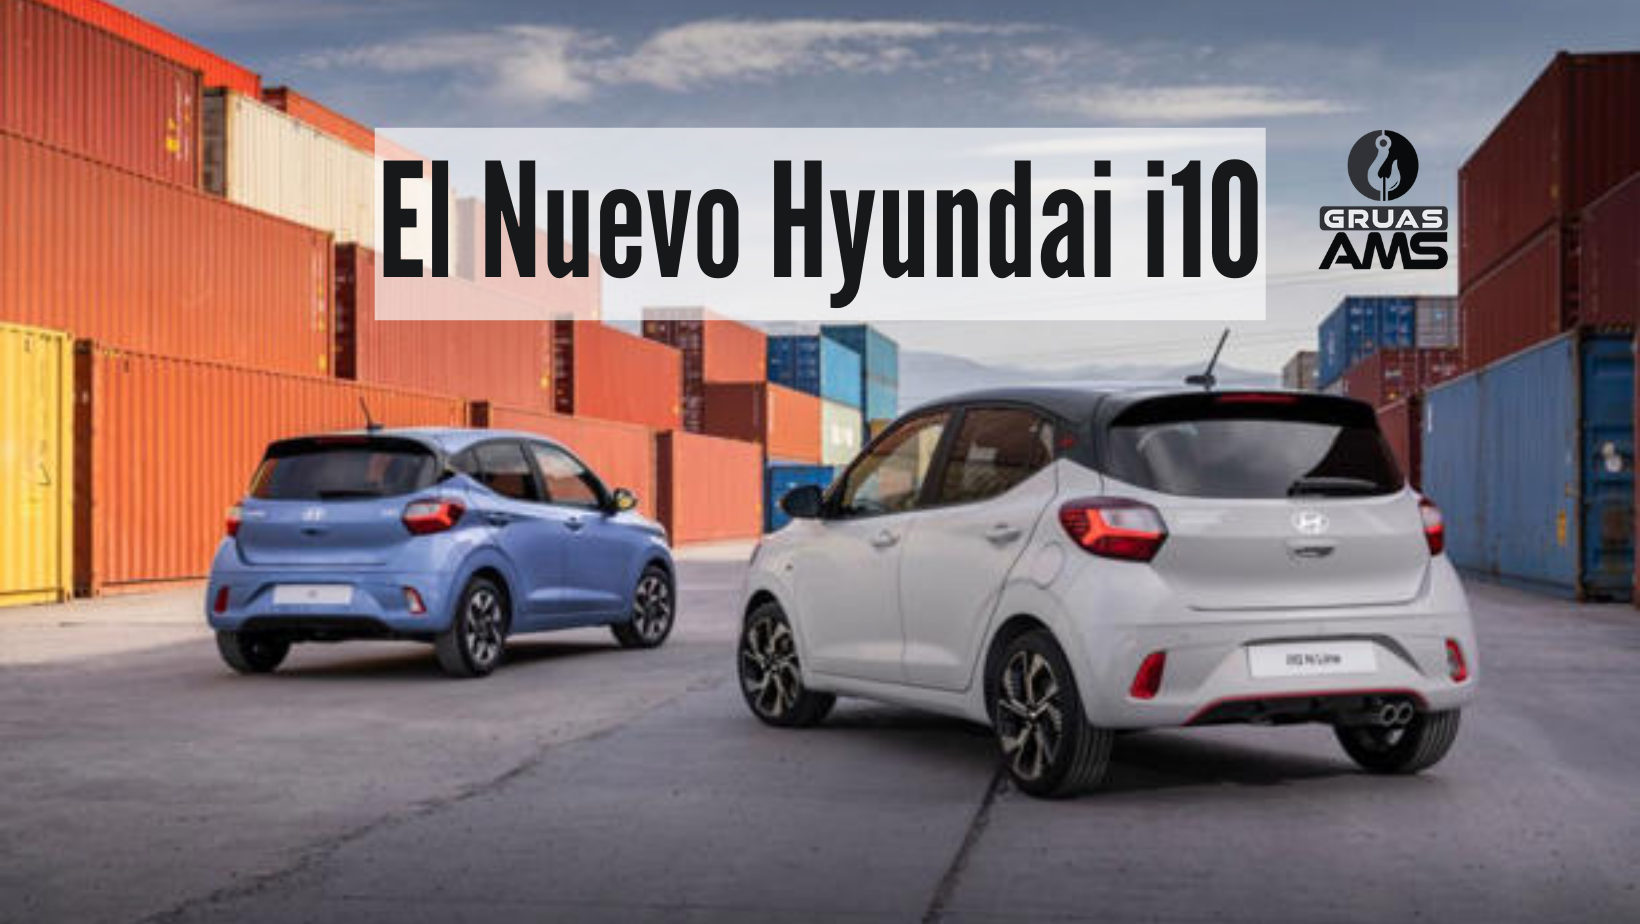 El Nuevo Hyundai i10